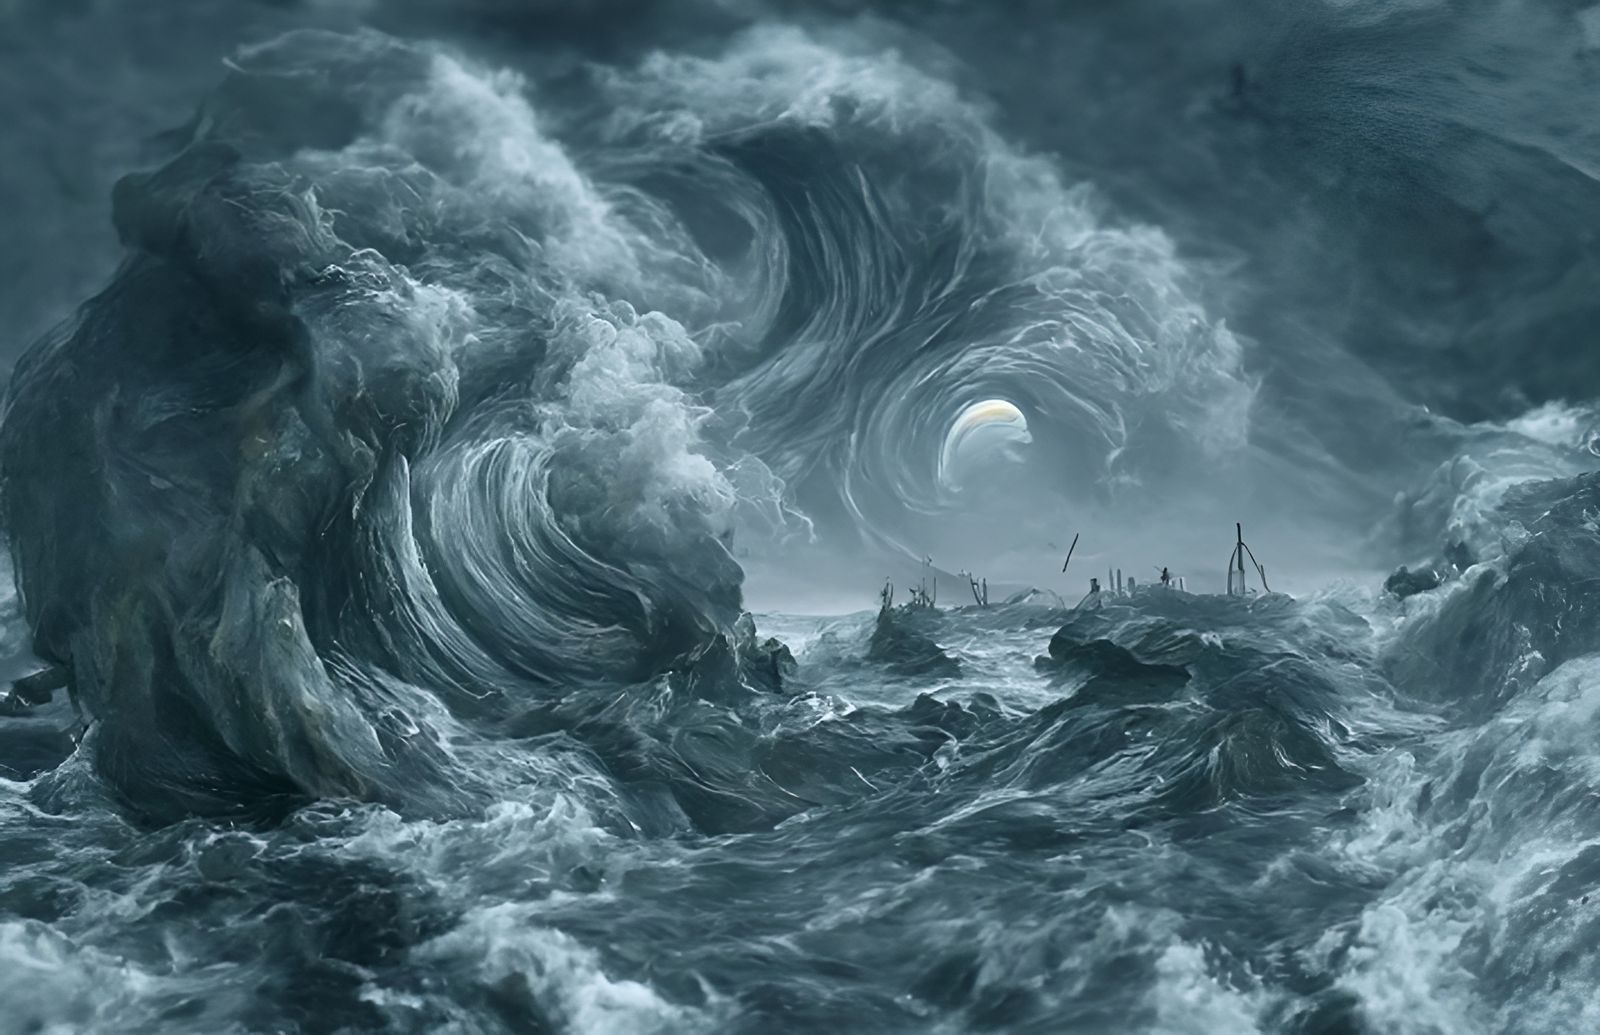 Wrathful Sea